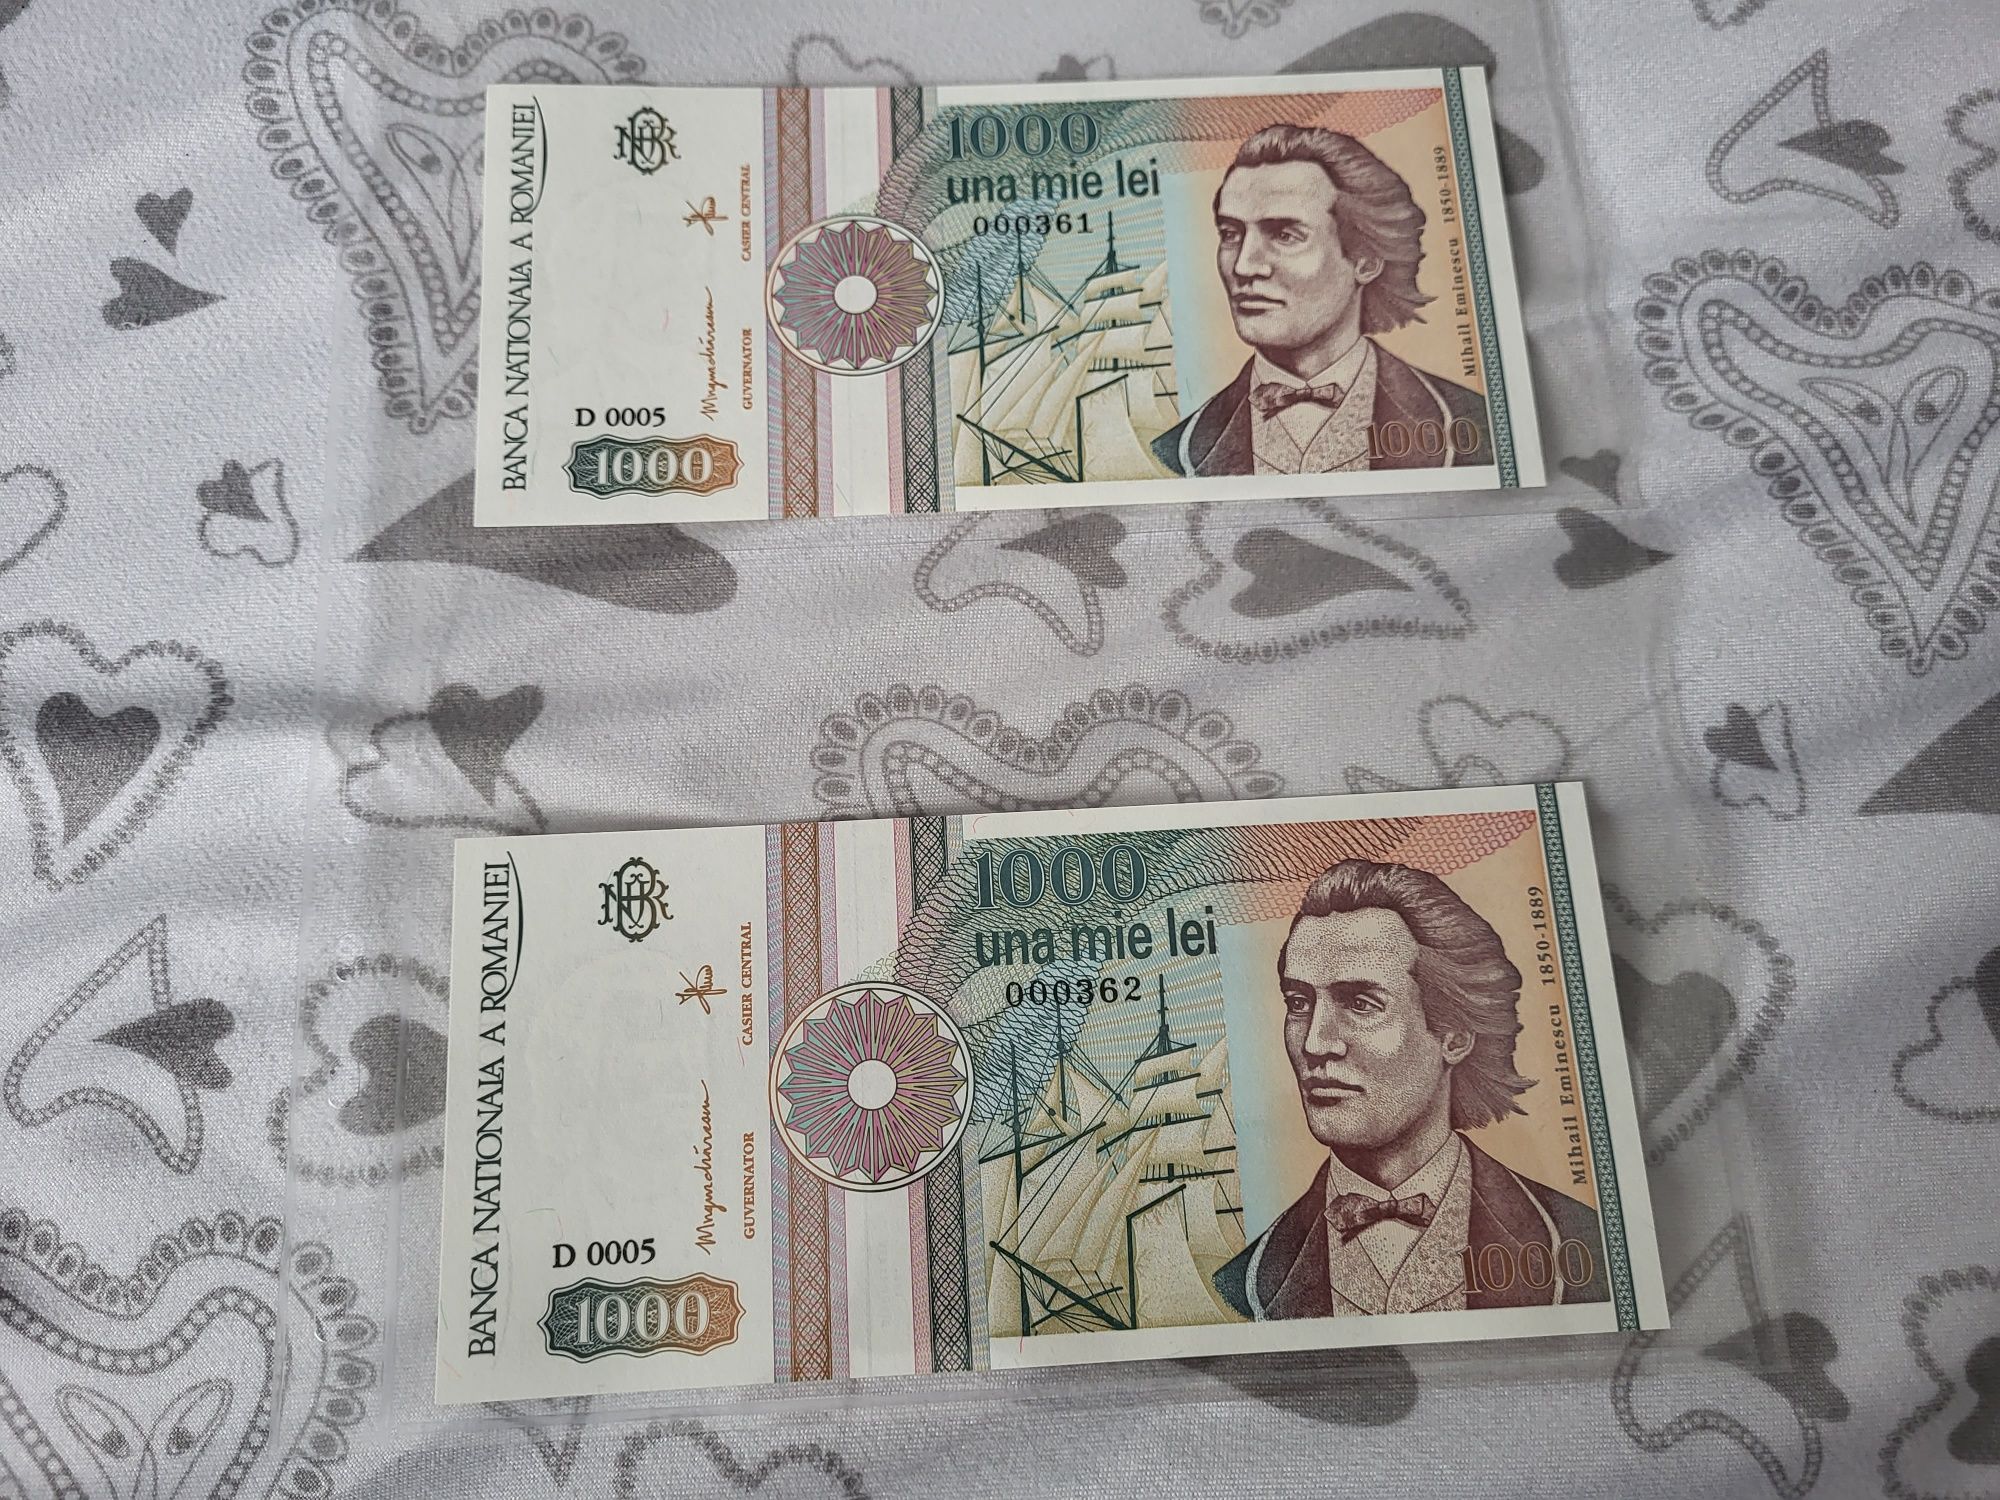 Bancnote românești de vânzare